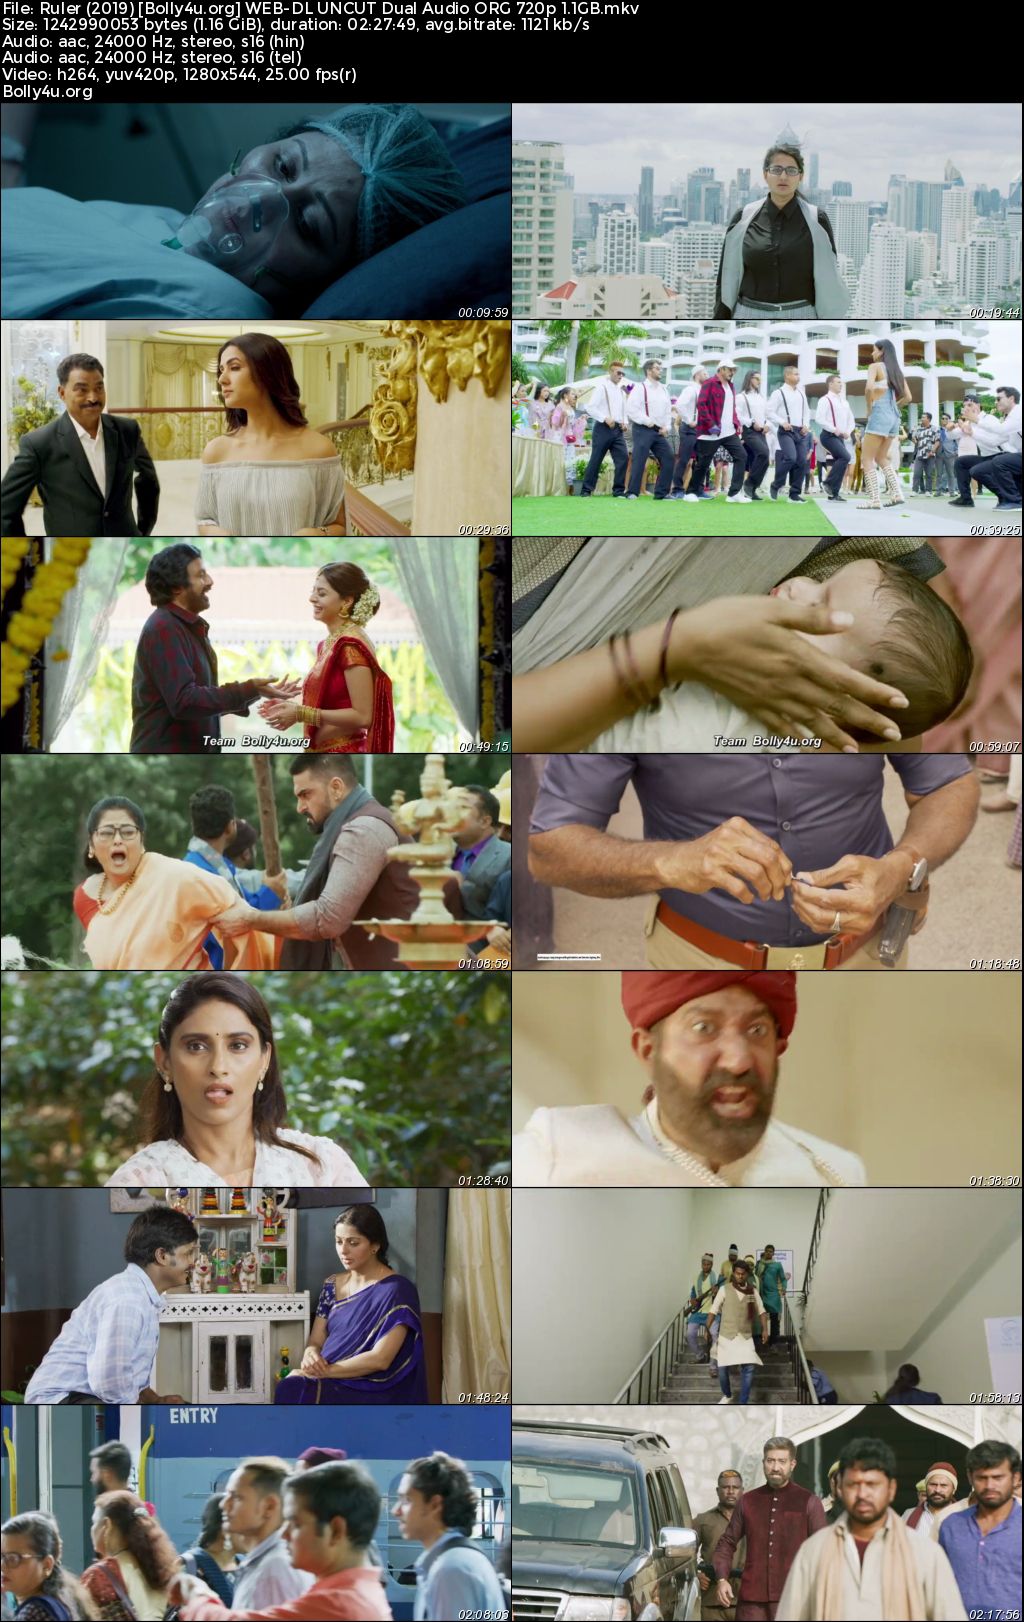 Ruler 2019 WEB-DL UNCUT Hindi Dual Audio ORG Full Movie Download 1080p 720p 480p